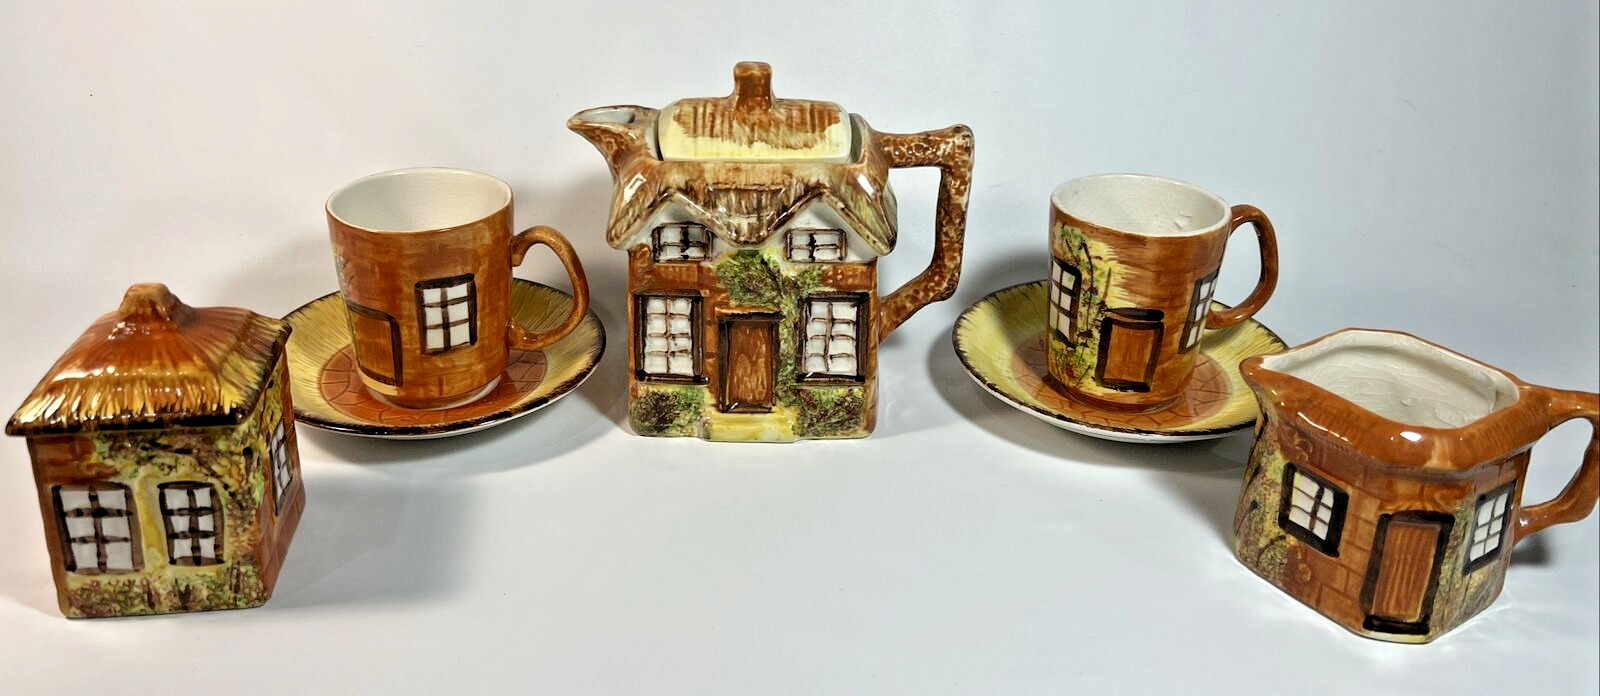 Price Kensington Cottage Ware Tea Set Made In England Limited Stamped, Vintage